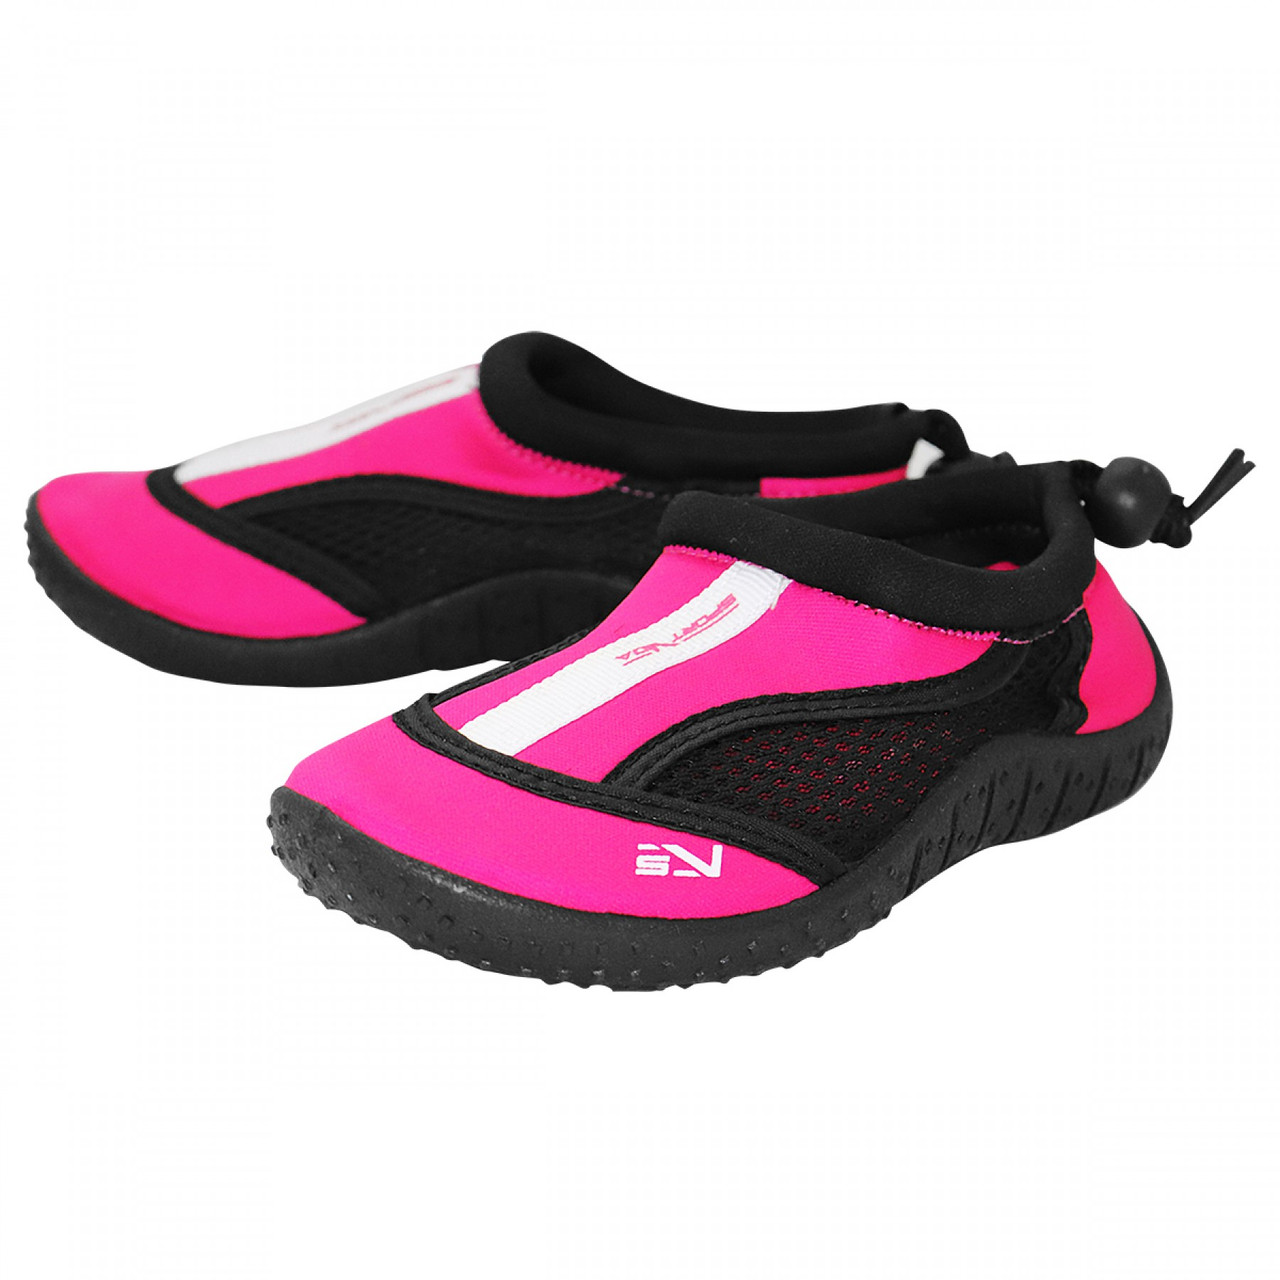 Обувь для пляжа и кораллов (аквашузы) SportVida SV-GY0001-R33 Size 33 Black/Pink alli ОРИГИНАЛ